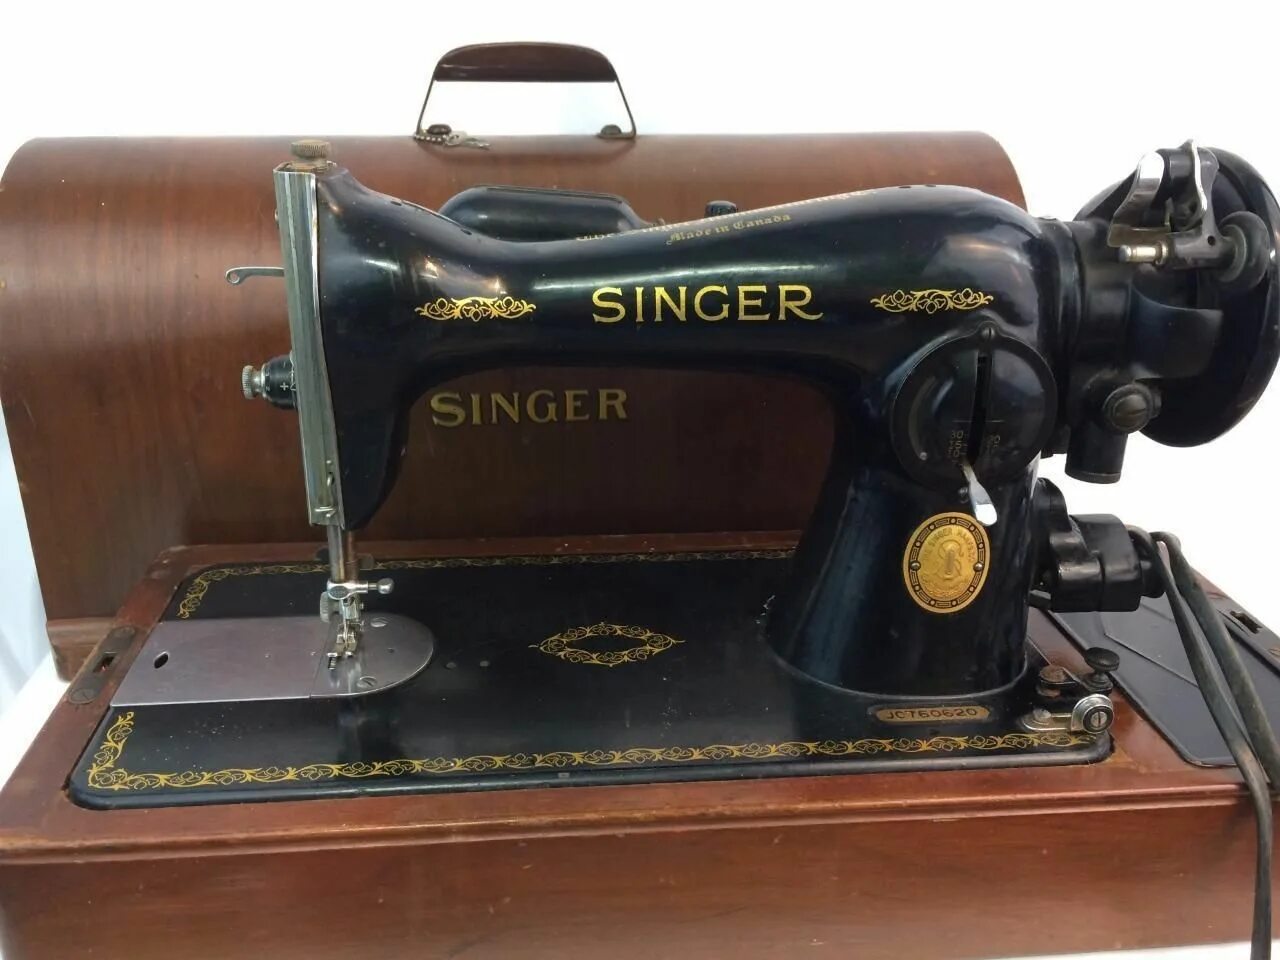 Ручная швейная машинка (Zinger super 2001). Швейная машинка Зингер 201. Зингер 160 черная швейная машинка. Зингер 201 швейная машинка 1940.